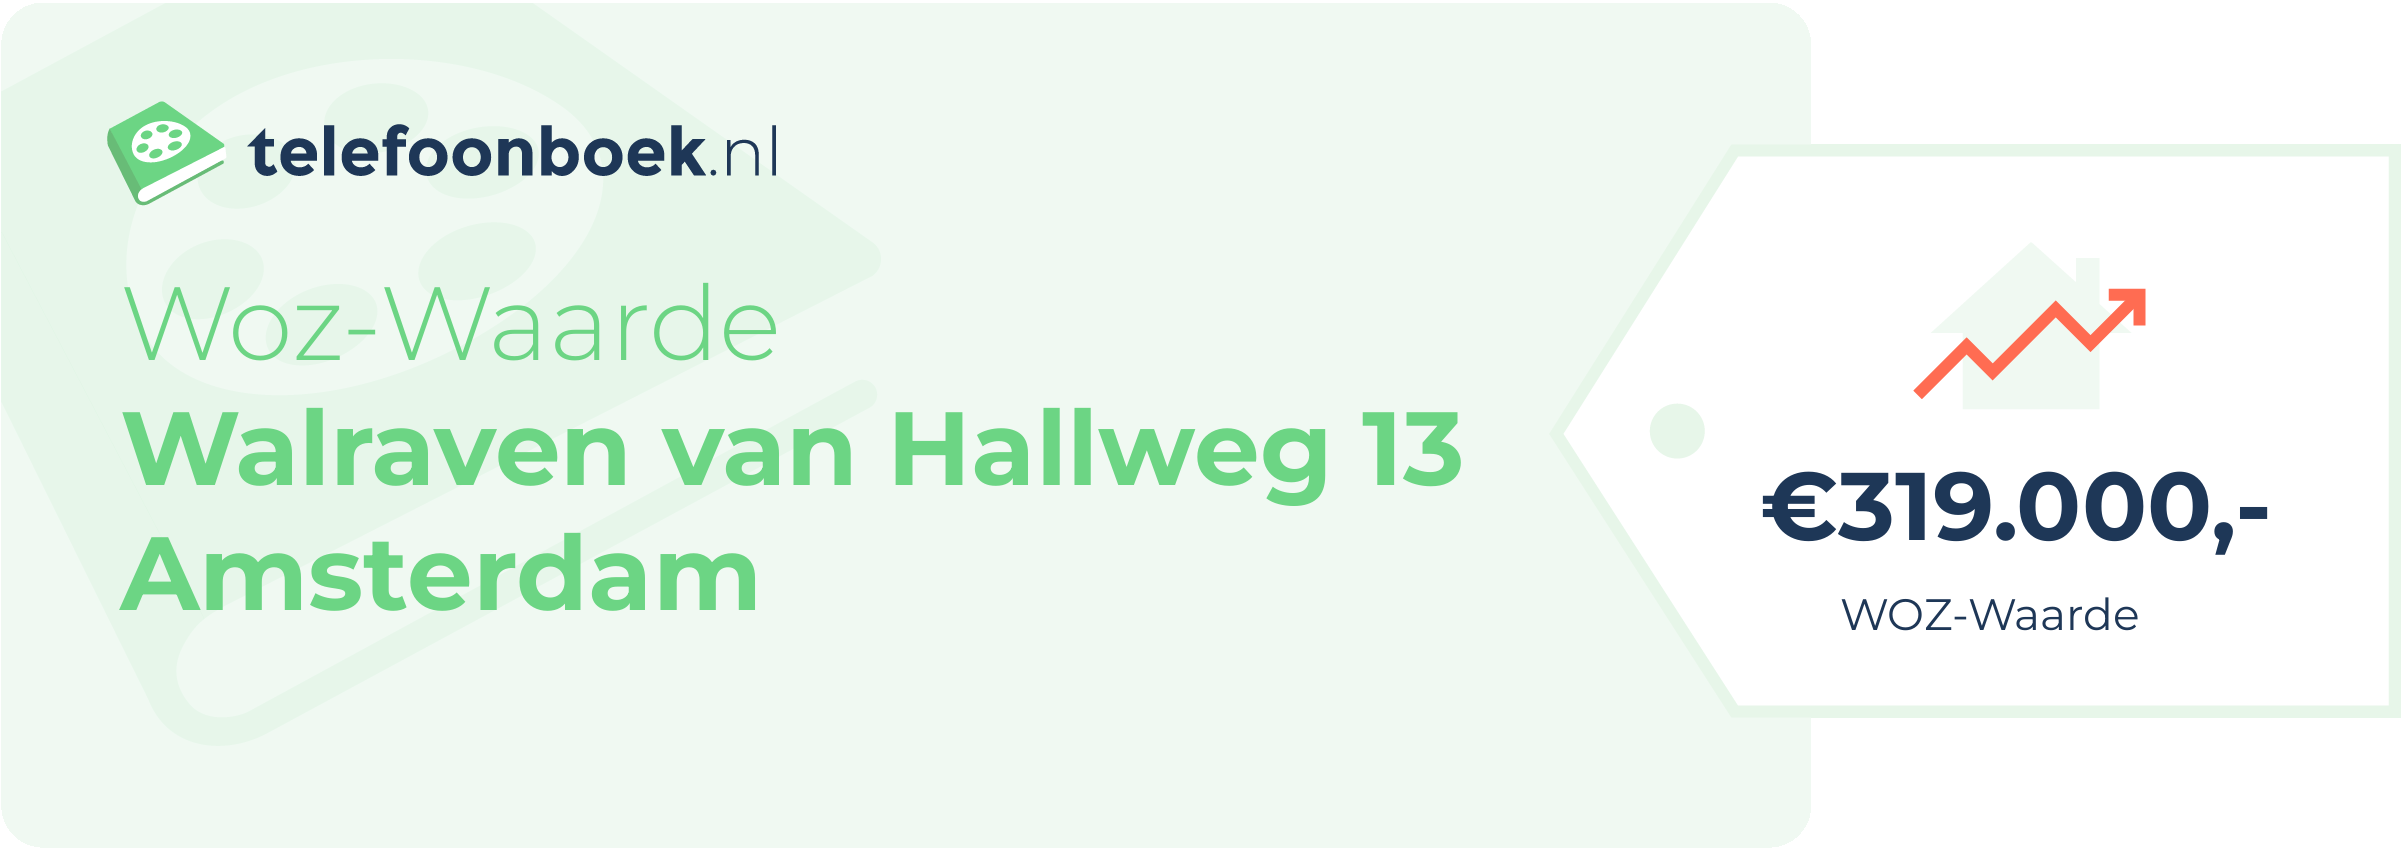 WOZ-waarde Walraven Van Hallweg 13 Amsterdam